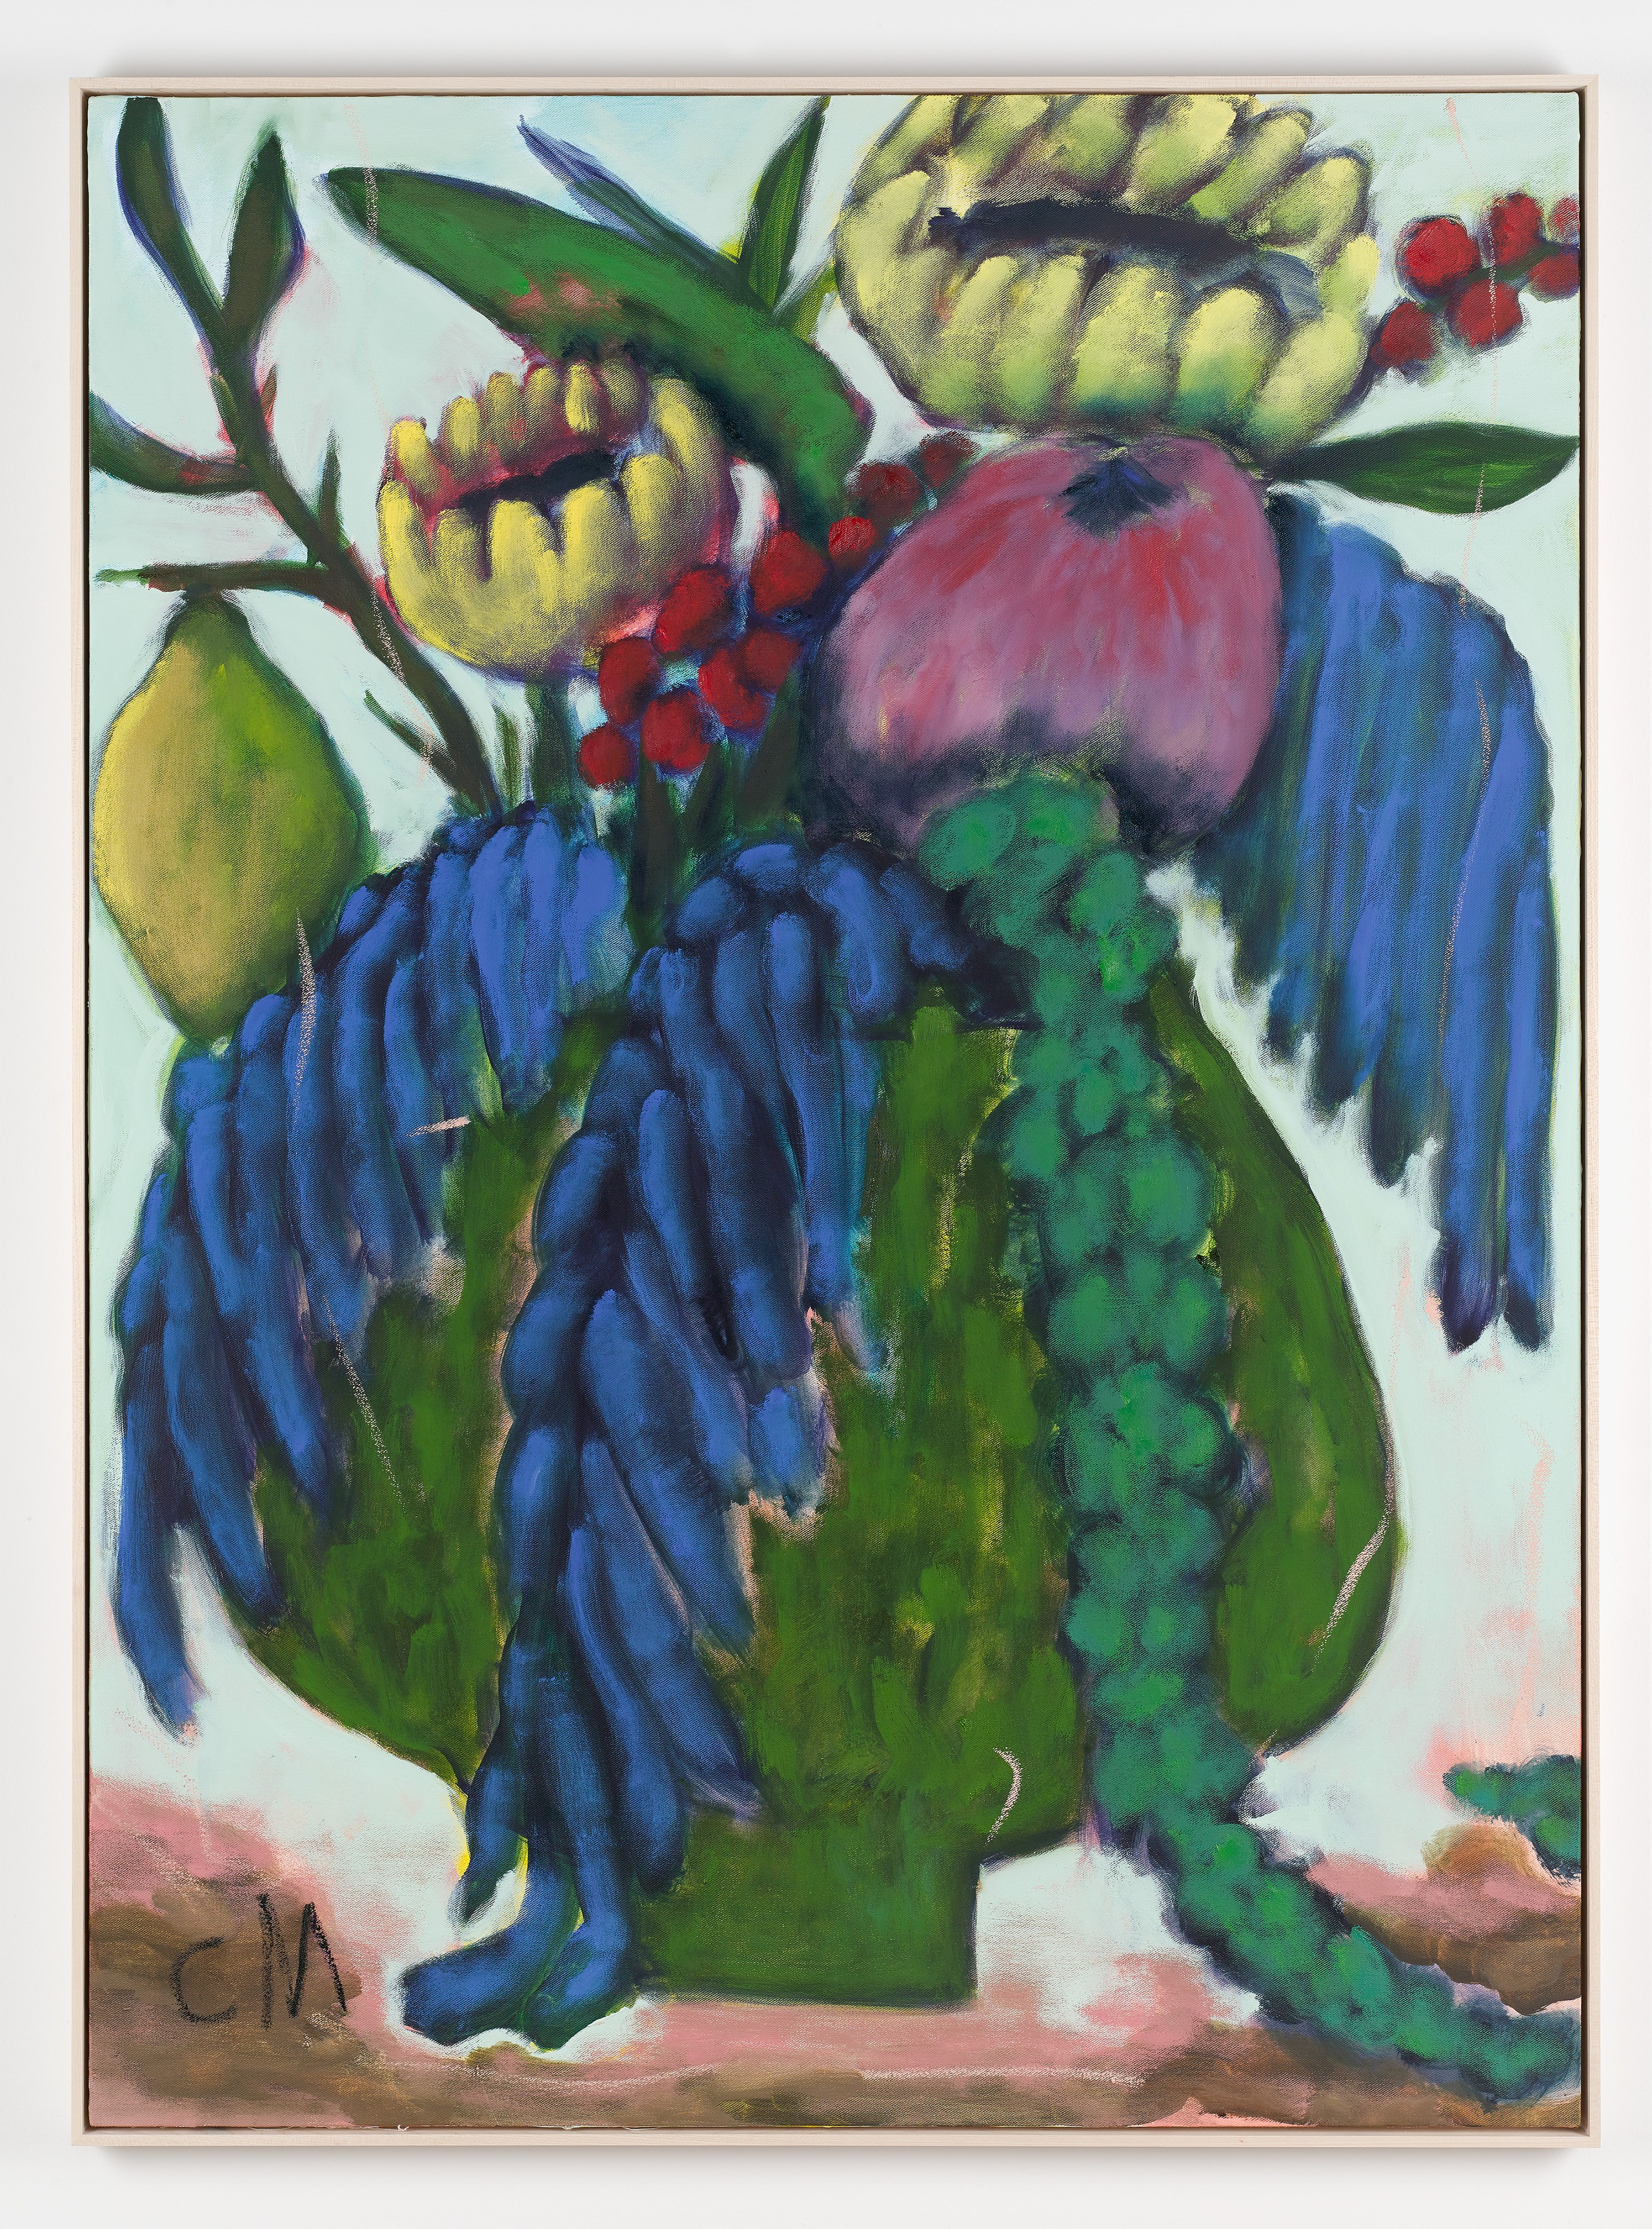 Conny Maier, Lago Maggiore, 2022, oil, pigment, oil stick on canvas, 150 x 110 cm, 59 1/2 x 43 1/2 in